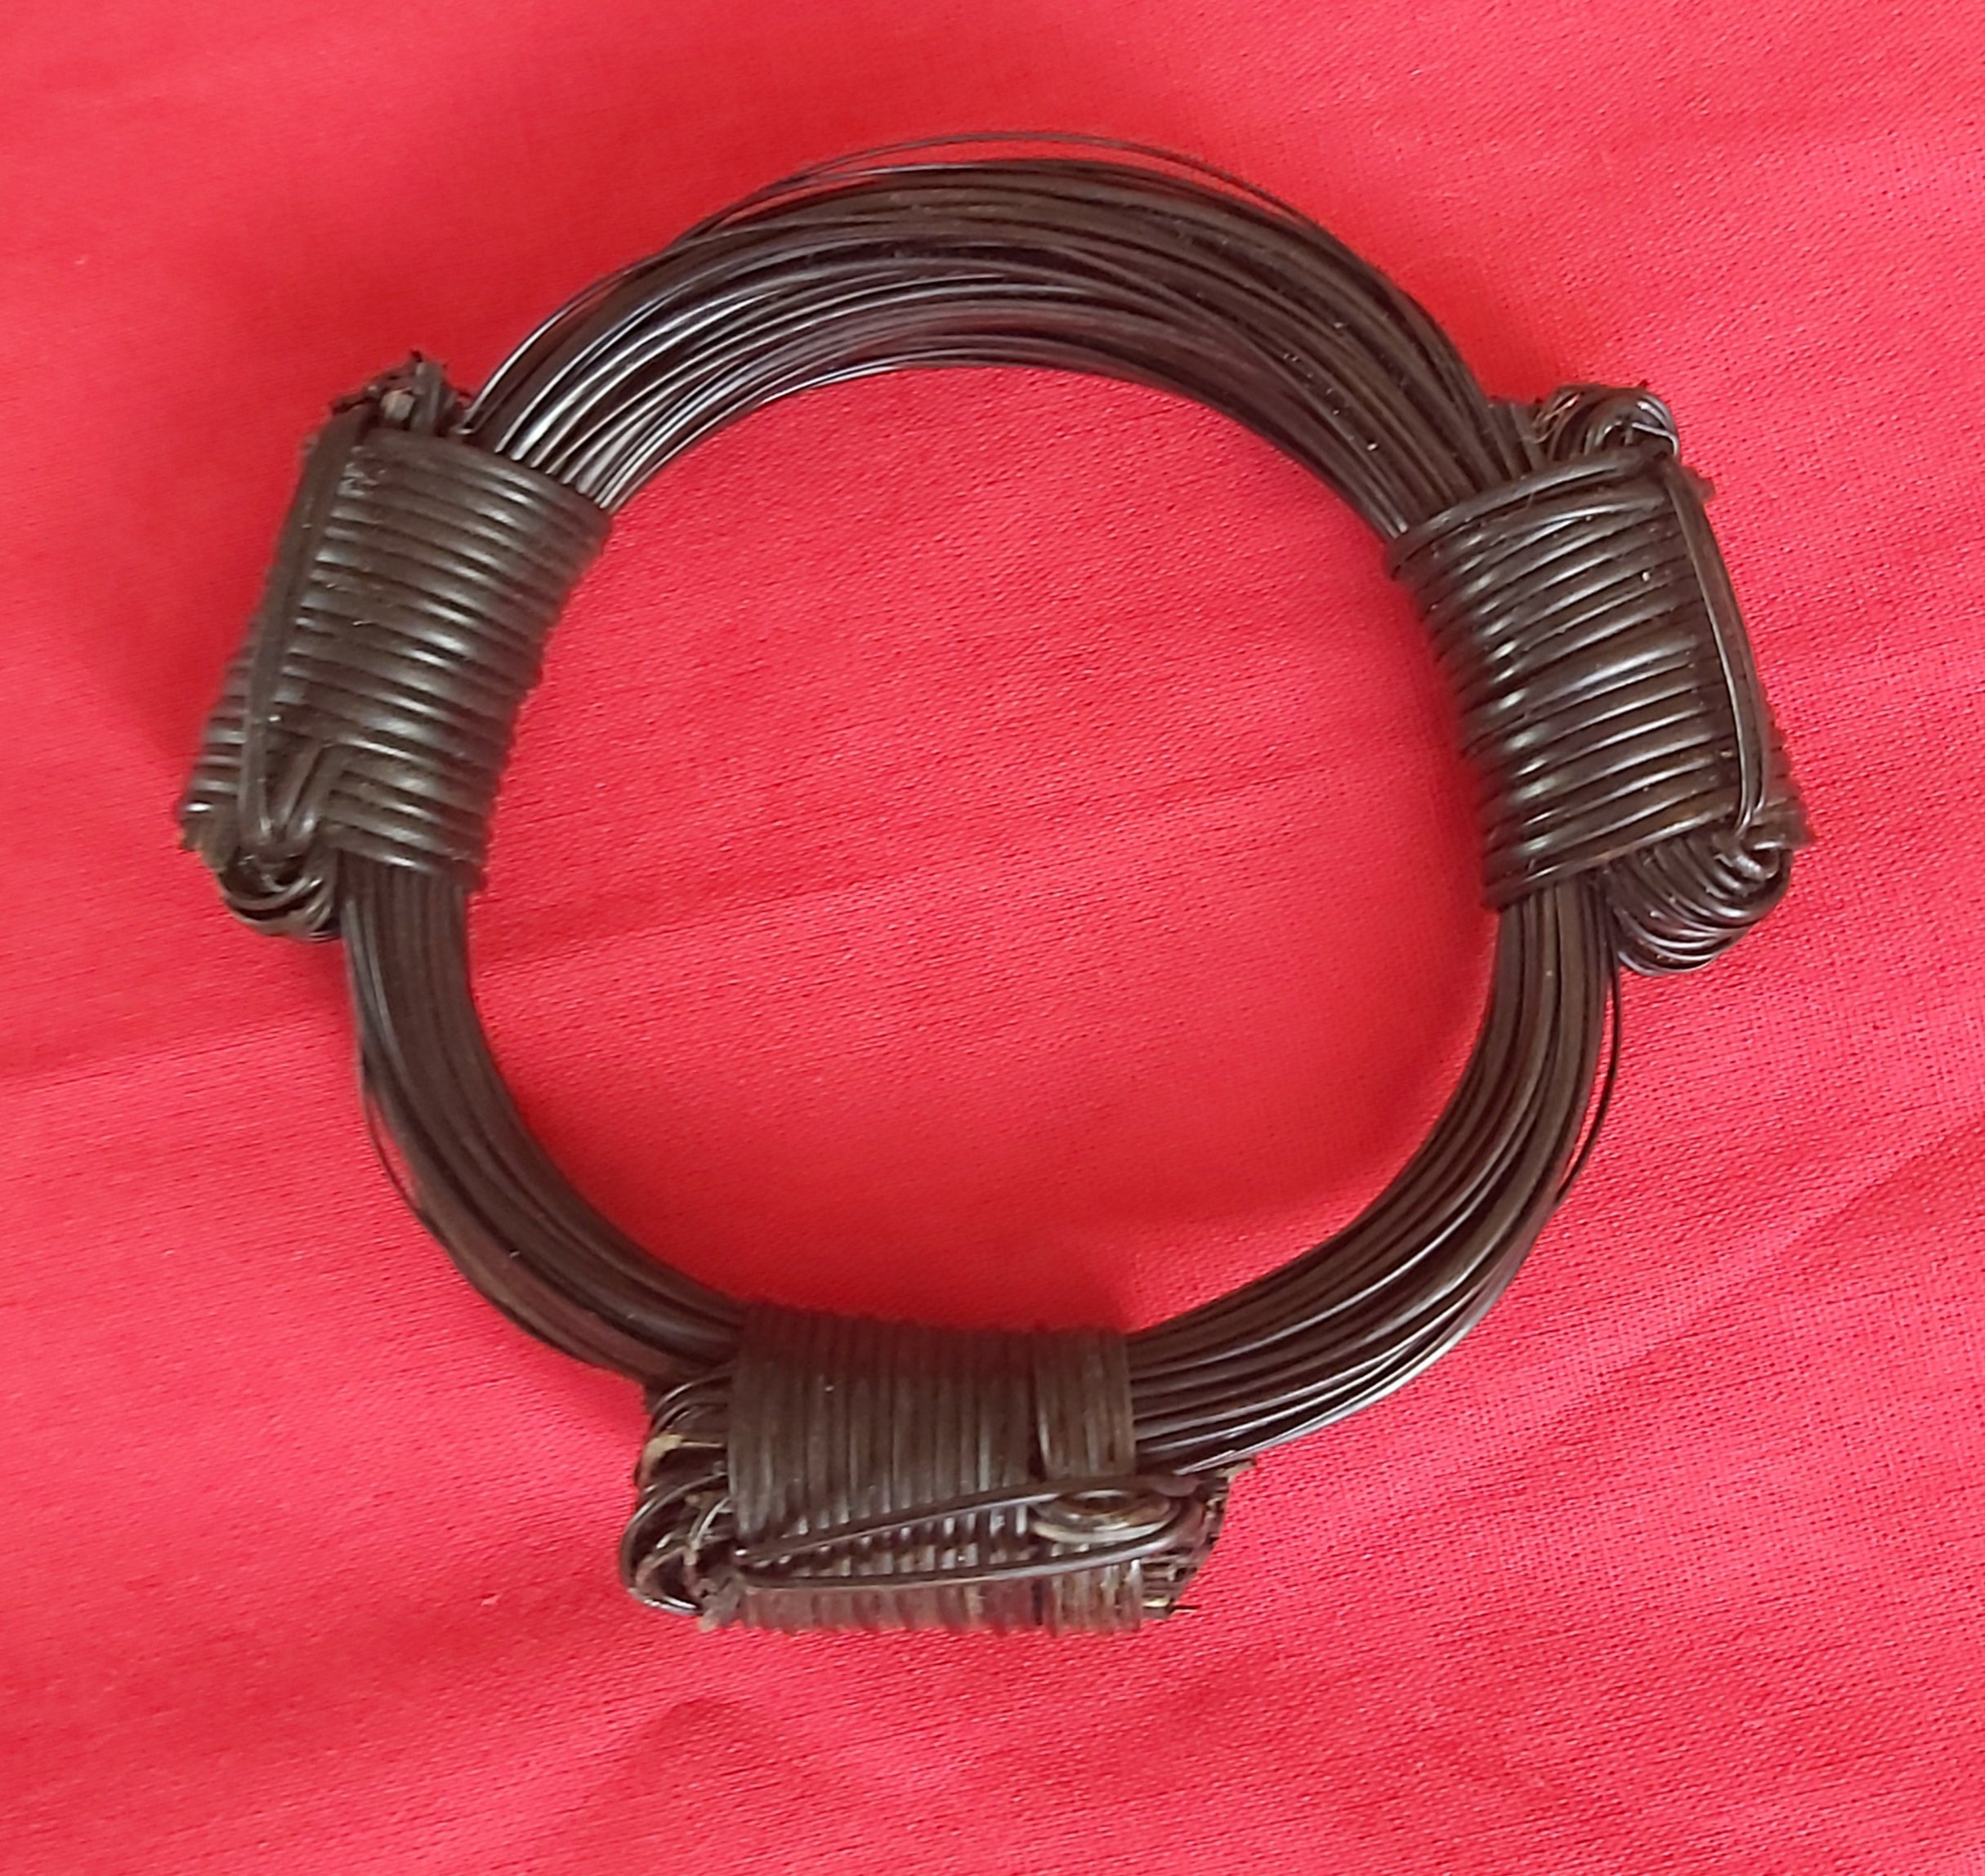 VB3 Very bulky elephant hair bracelet 3 5" max. Diameter